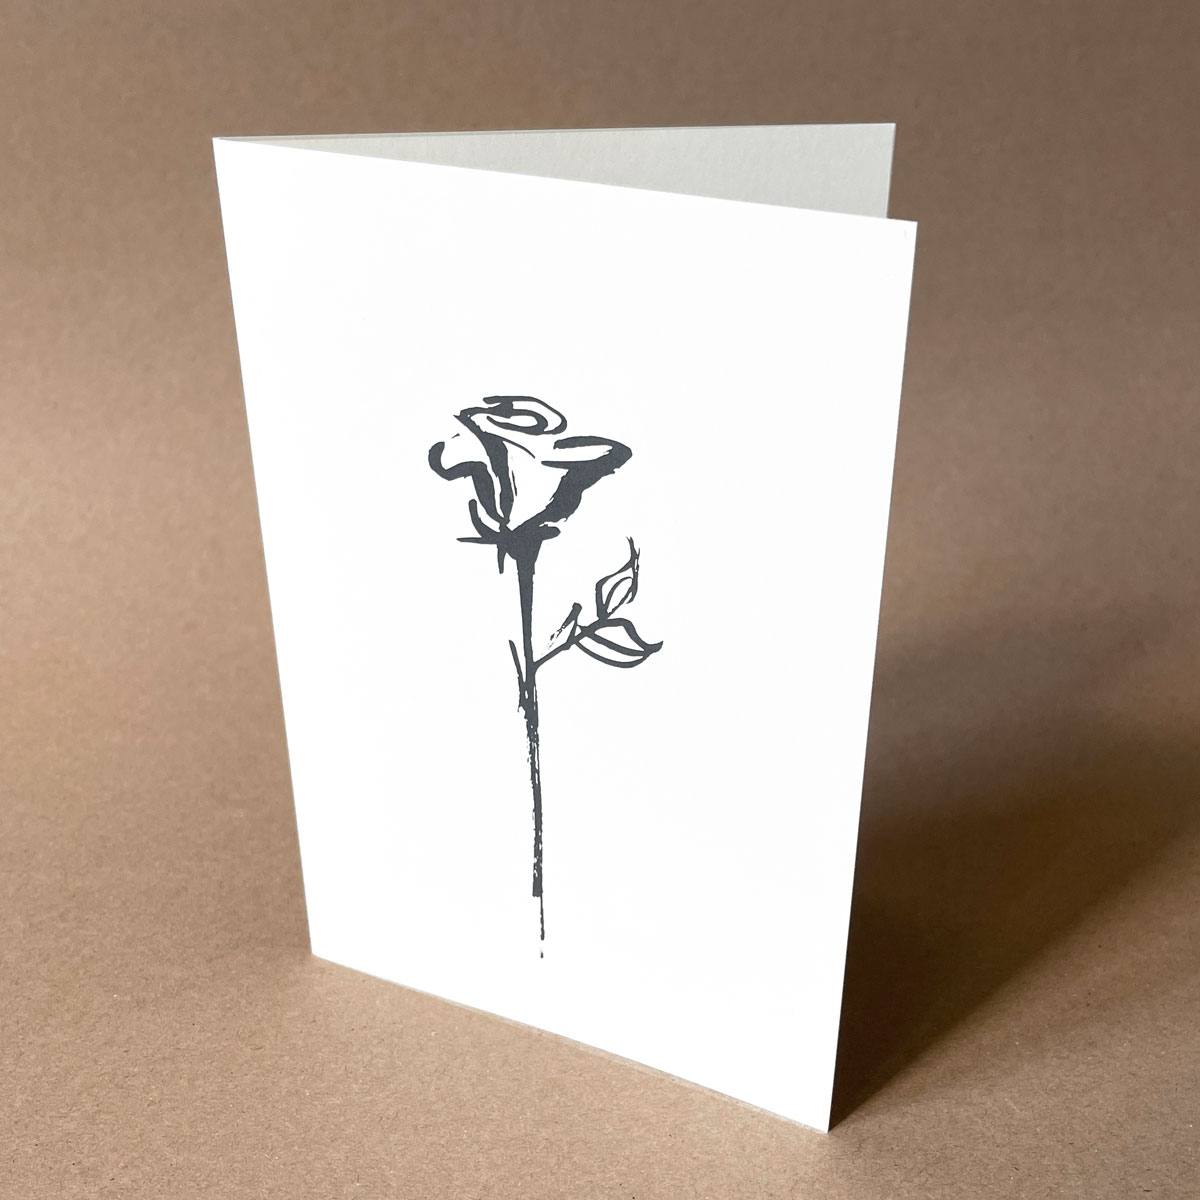 Recycling-Trauerkarten mit einer schlichten Rose